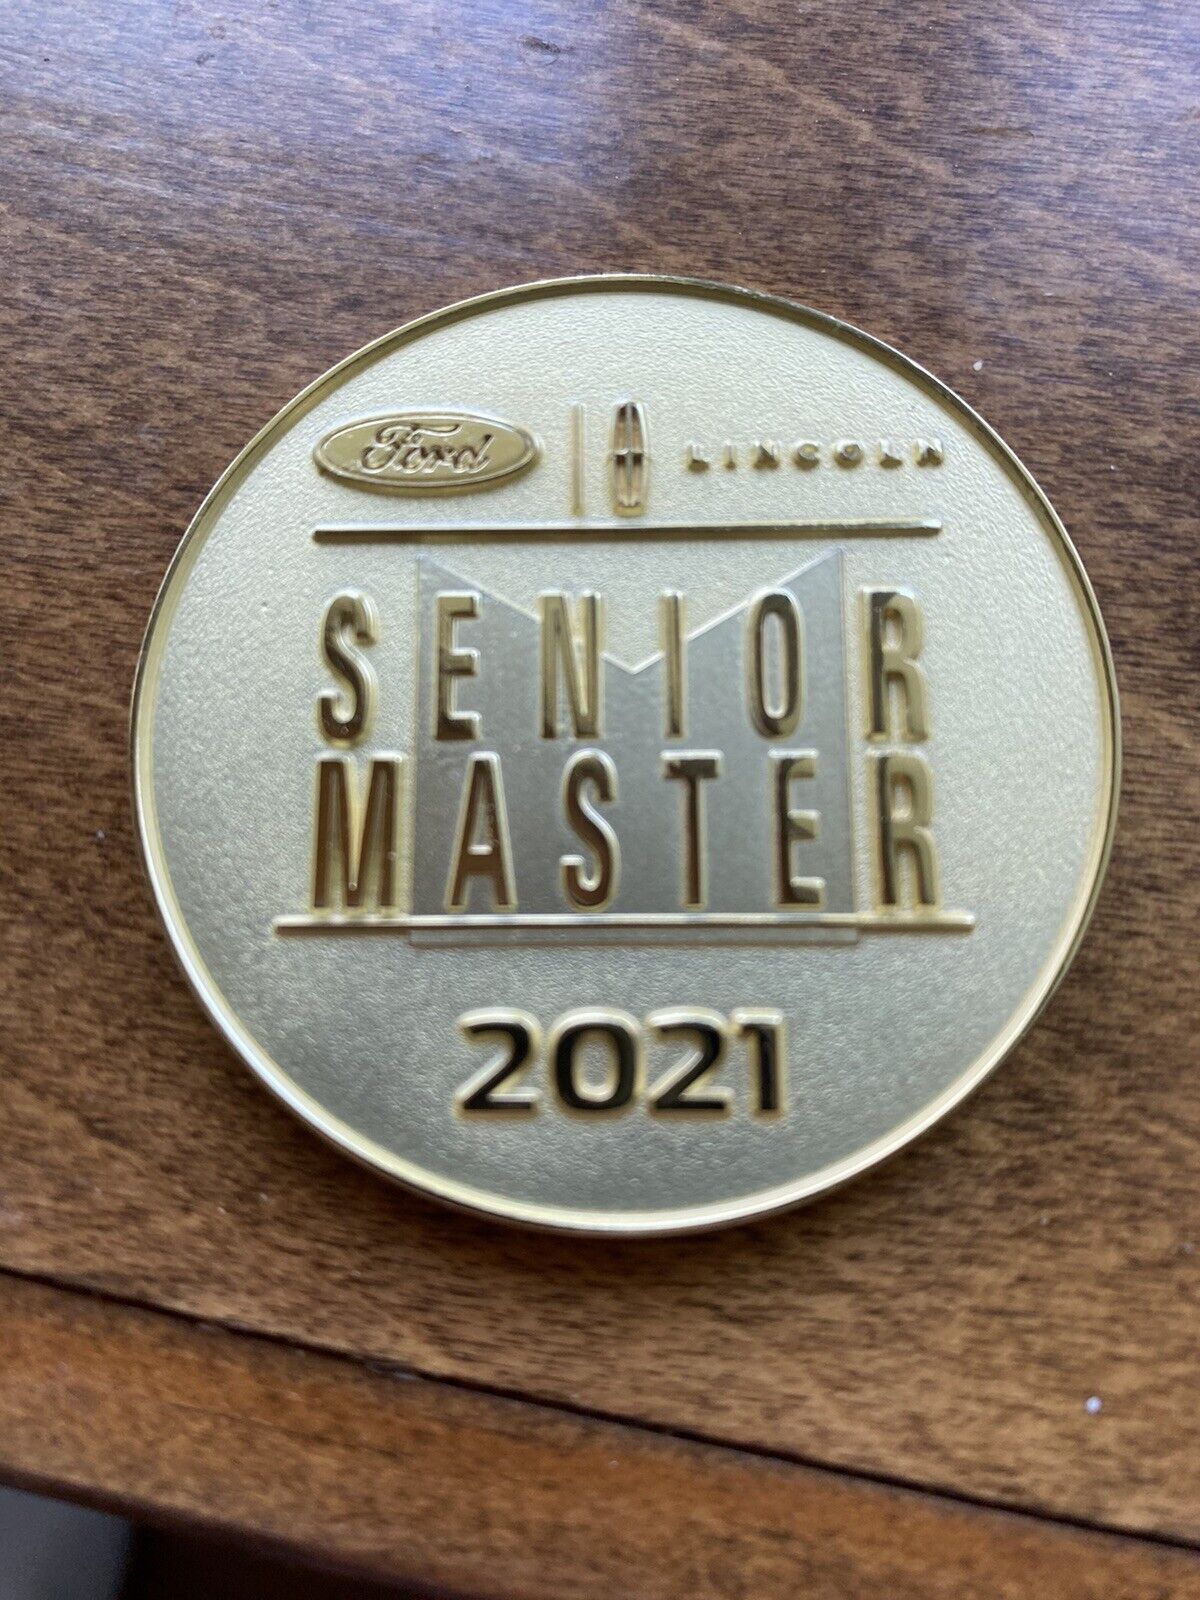 2021 Ford Senior Master Coin